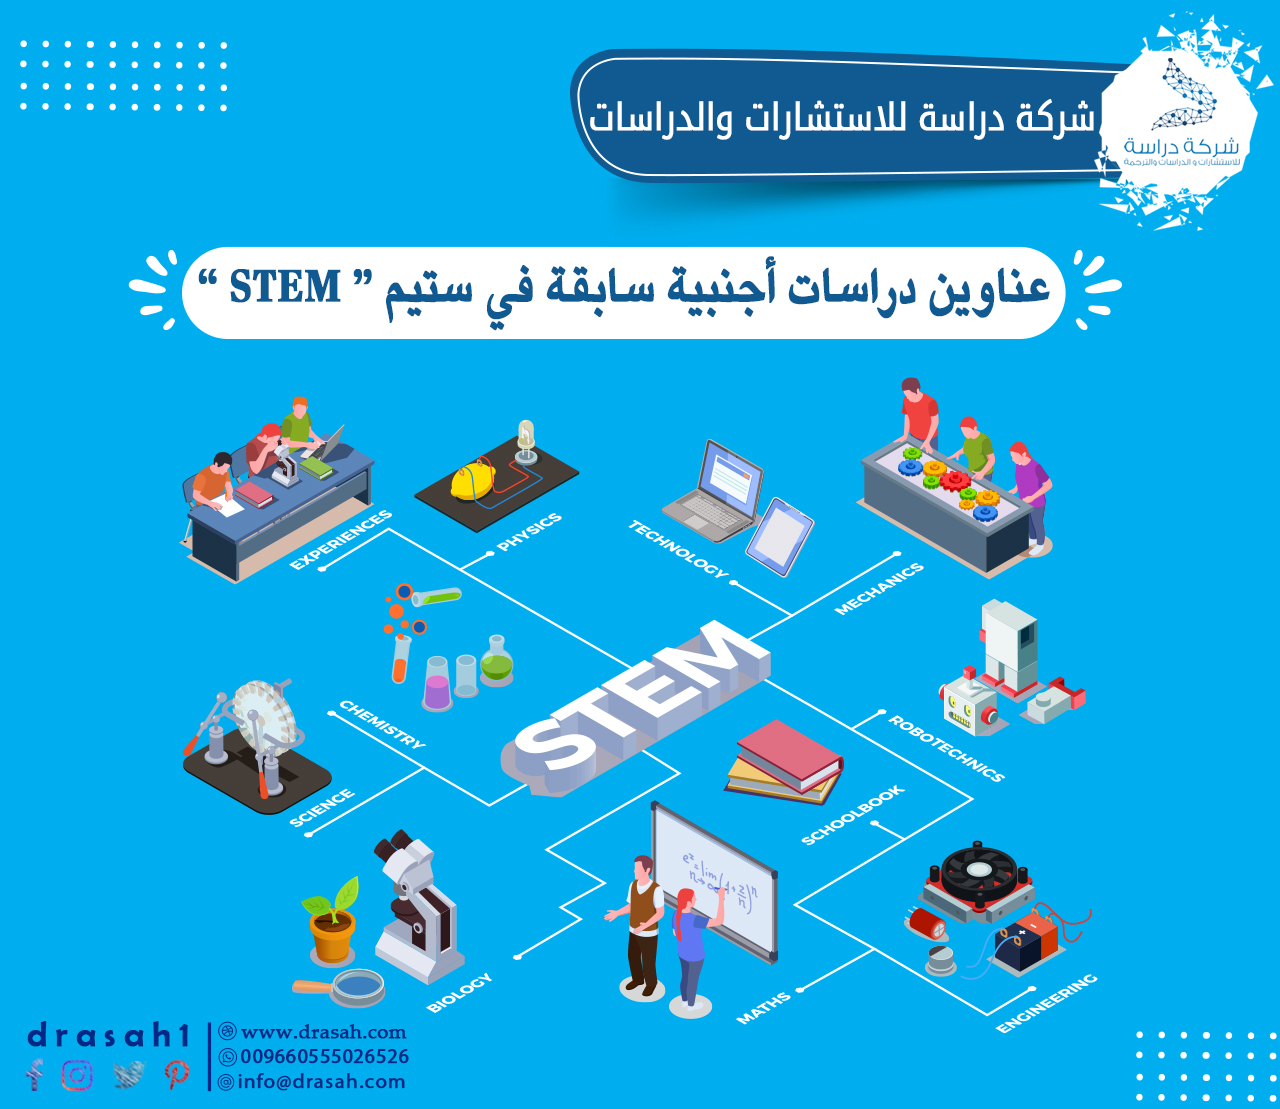 عناوين دراسات سابقة أجنبية في تعليم STEM (العلوم والتكنولوجيا والهندسة والرياضيات) في تدريس الرياضيات